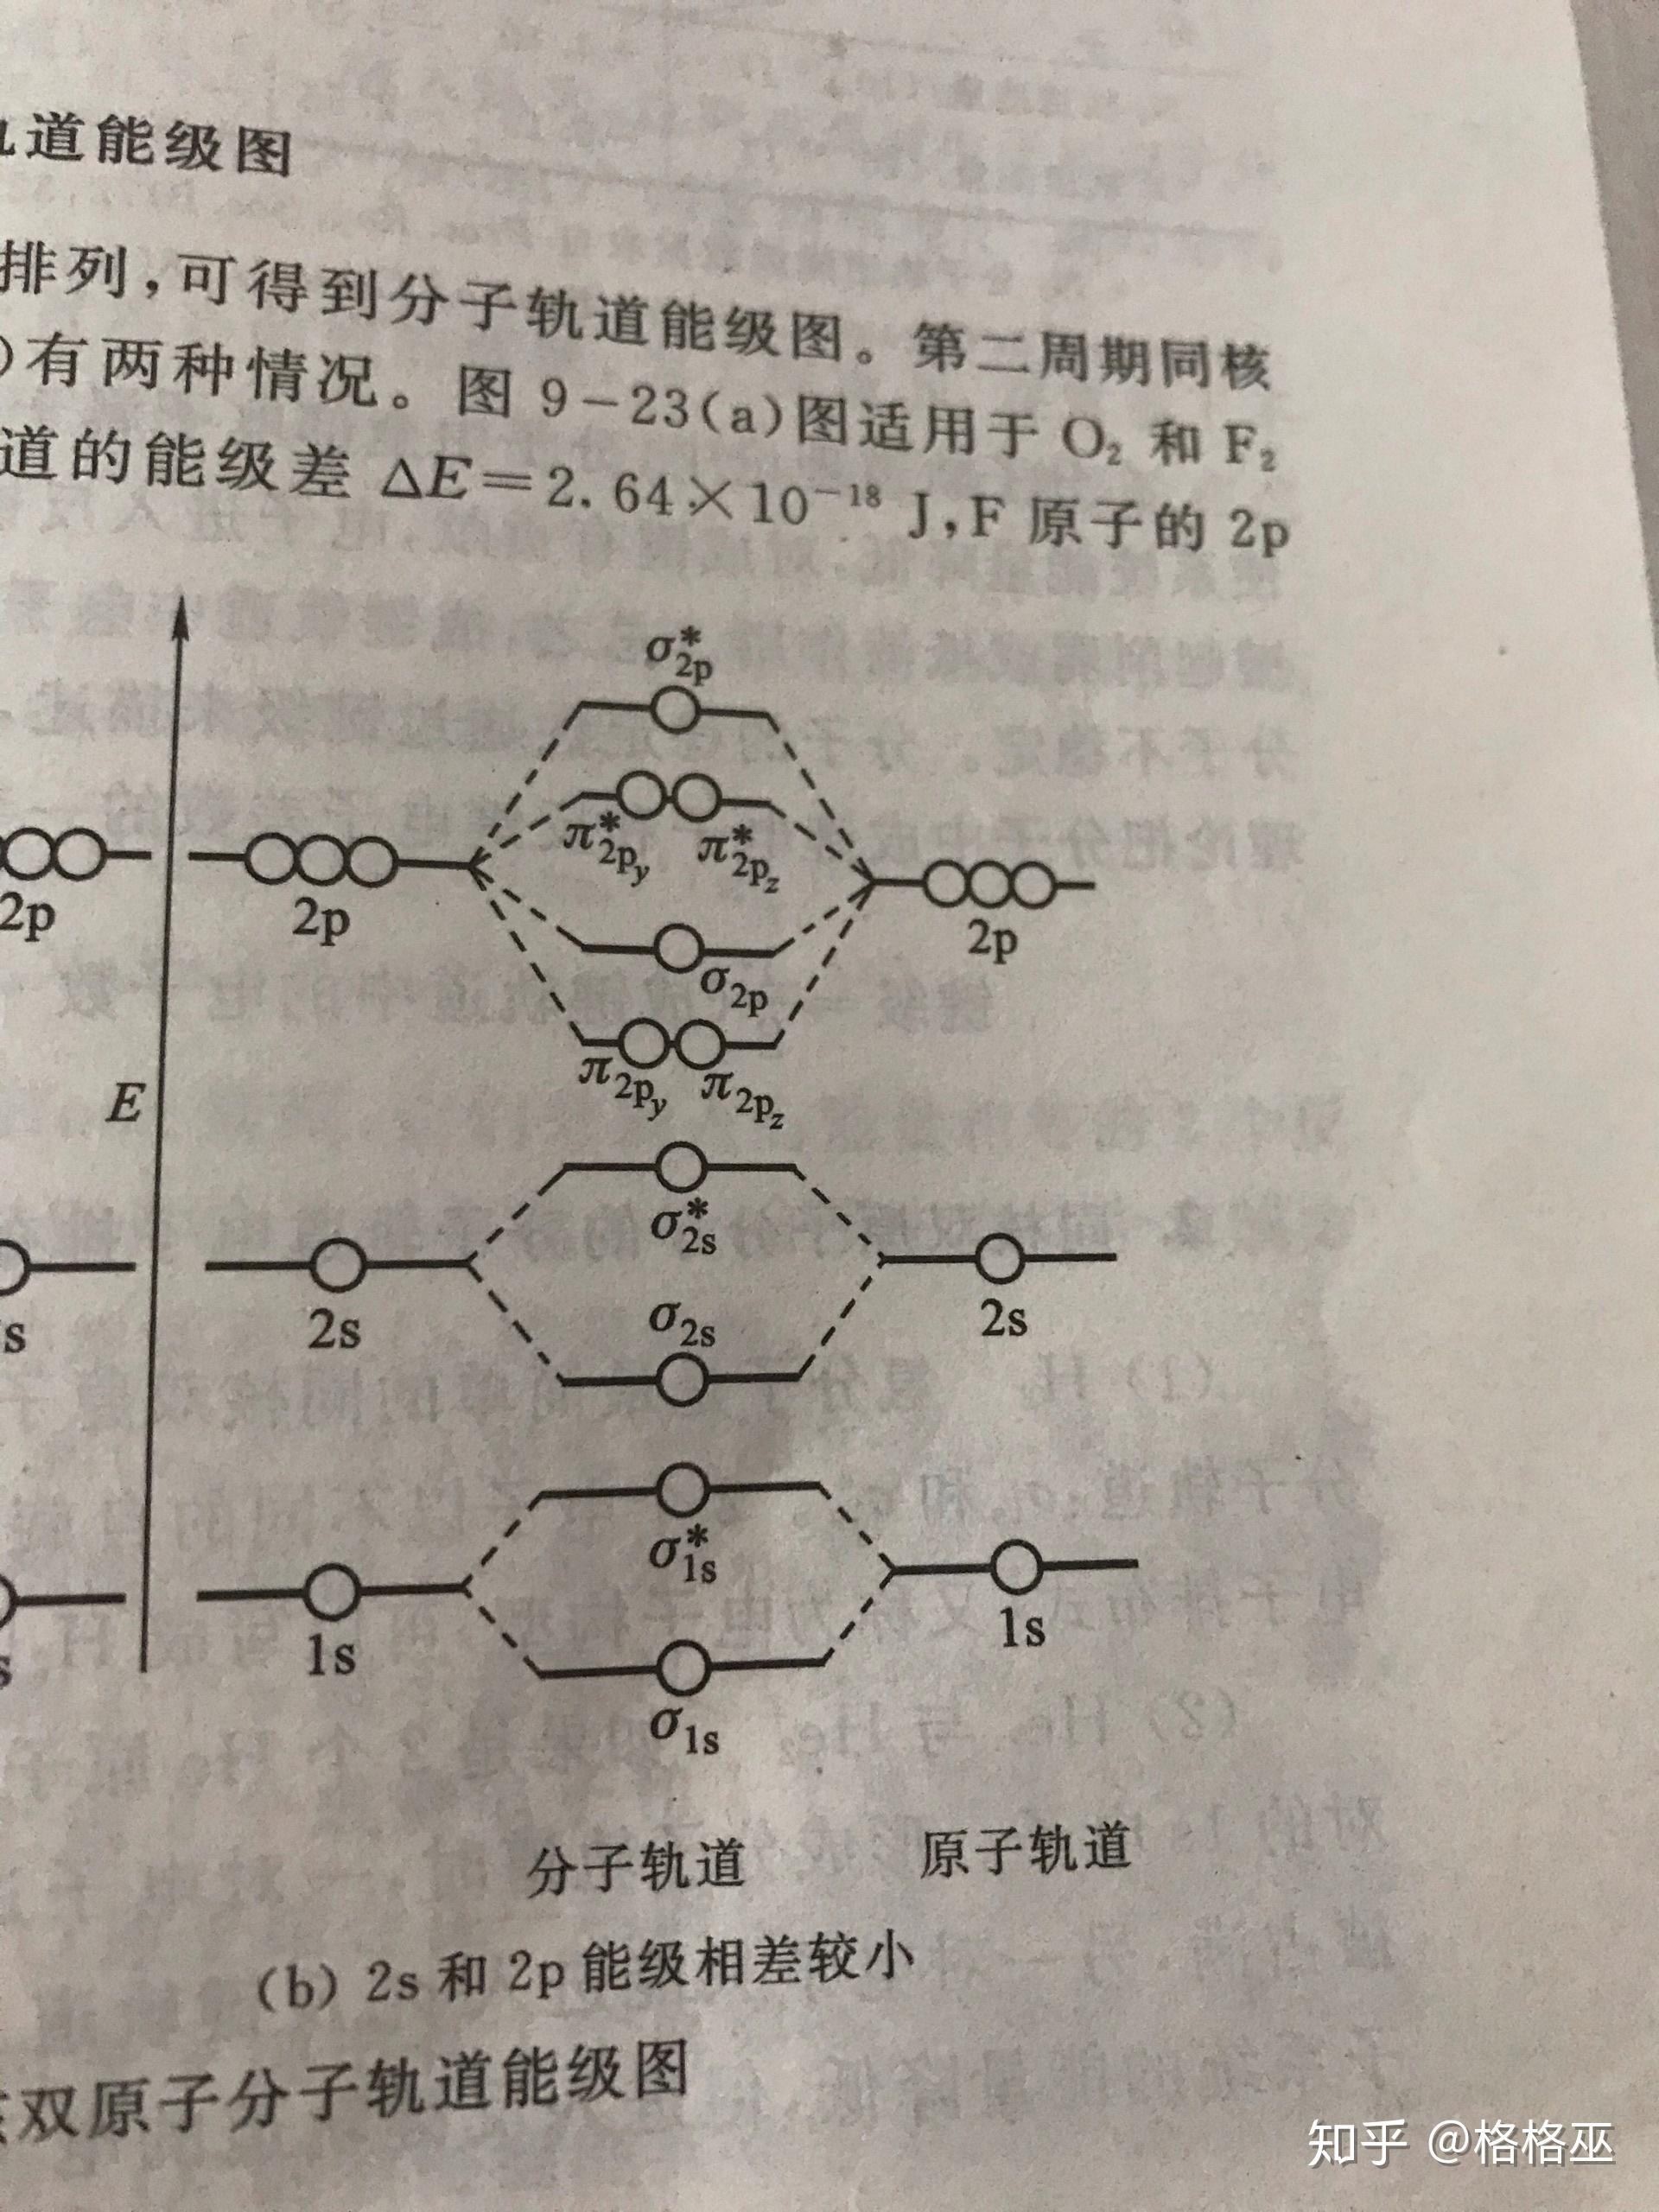 CO的分子轨道示意图图片